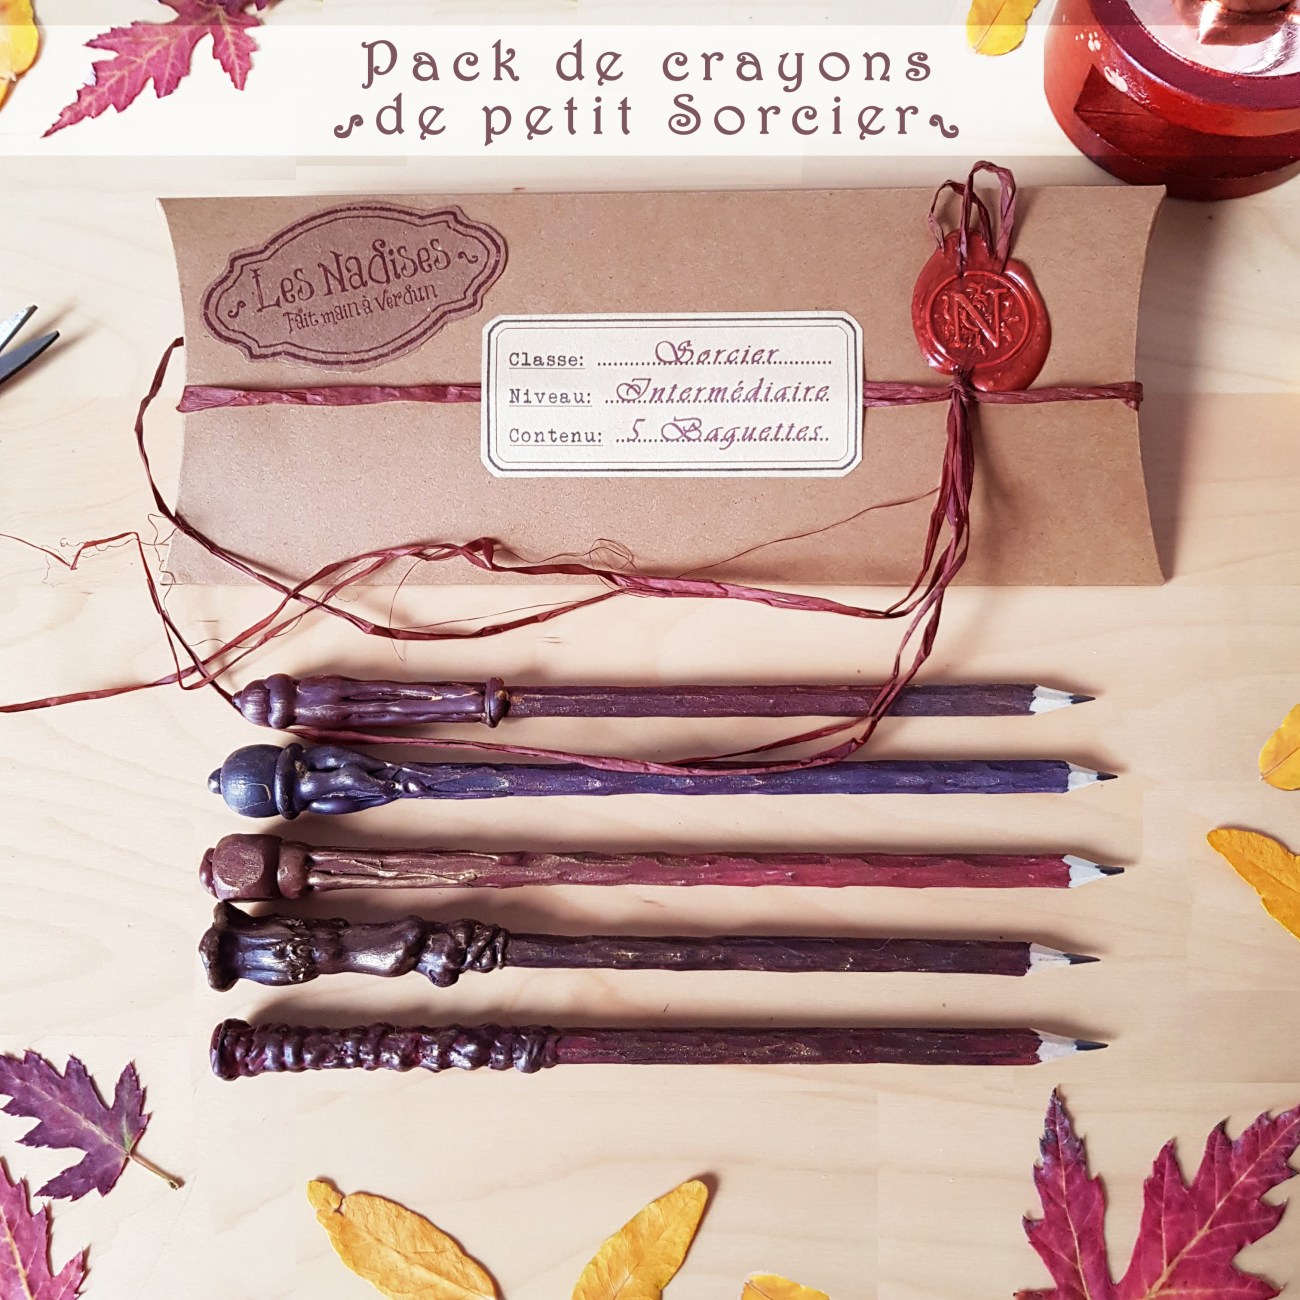 Le pack de crayons pour «sorciers» de l'entreprise Les Nadises.